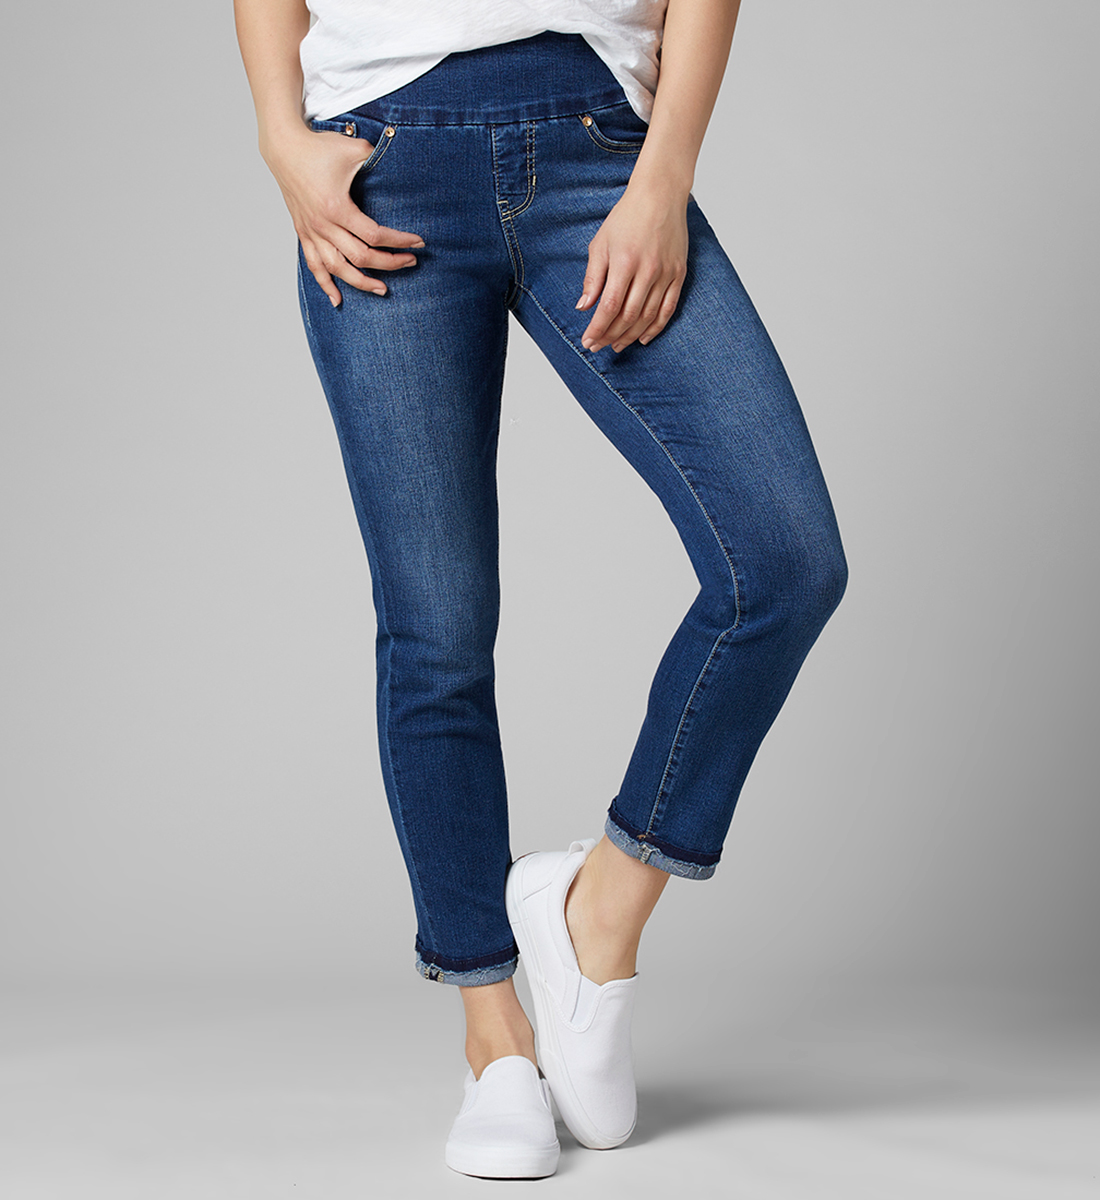 Amelia Pull-On Jeans - Women's Slim Ankle Medium Indigo | JAG® Jeans USA